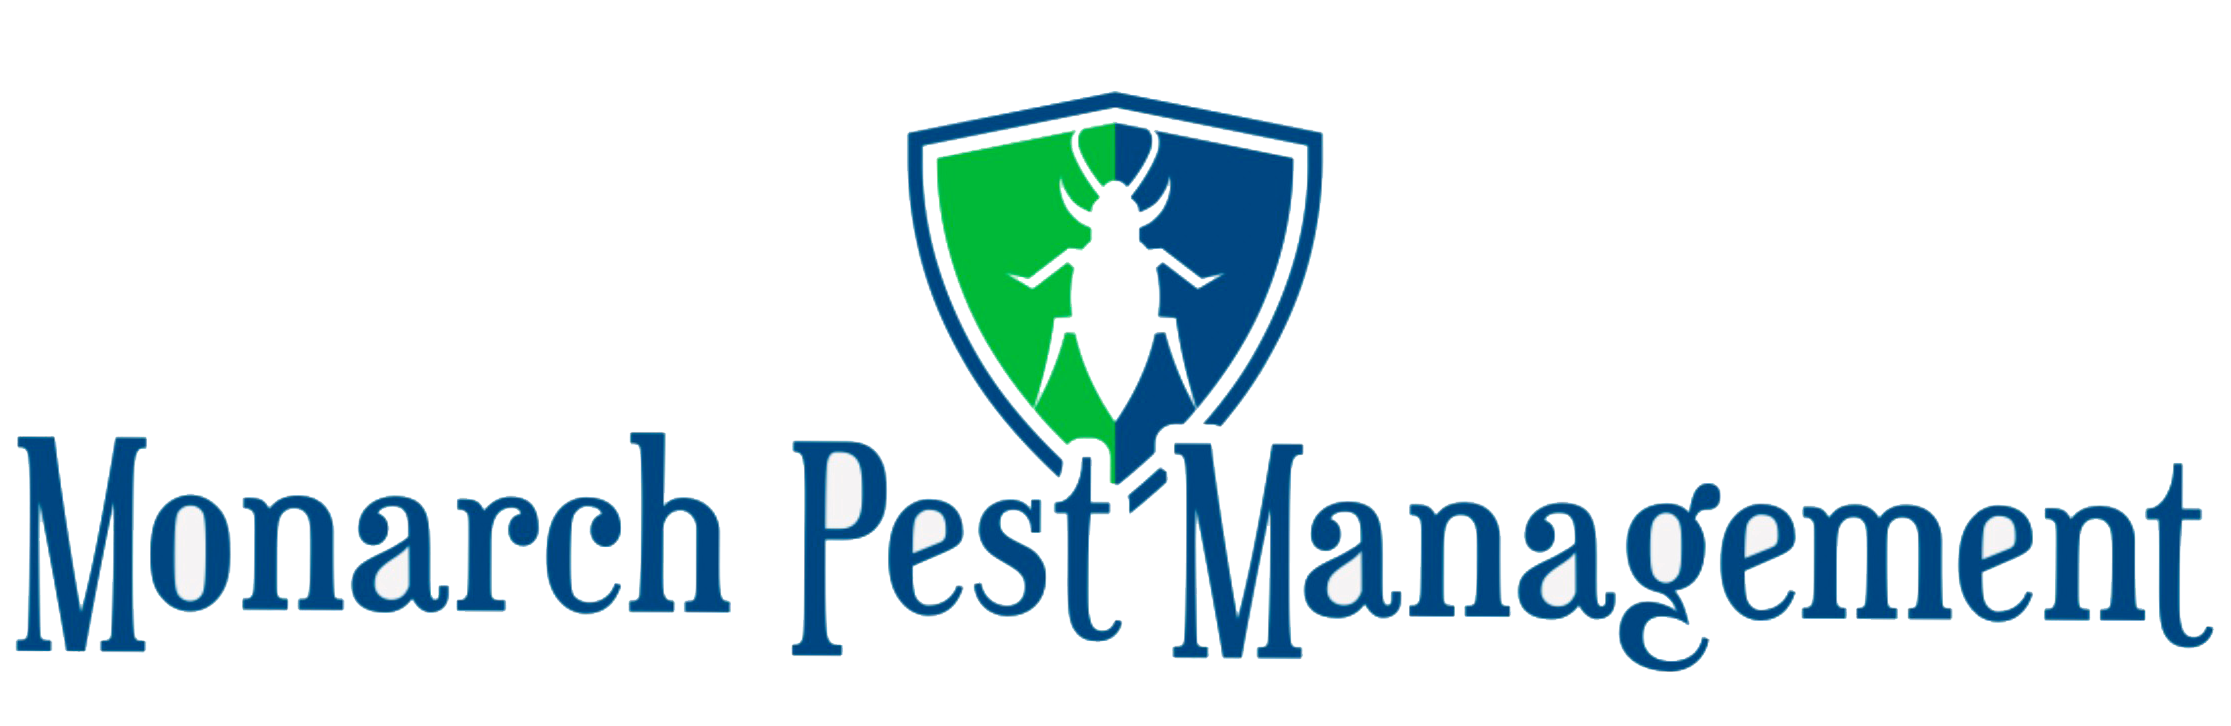 Monarch Pest Management